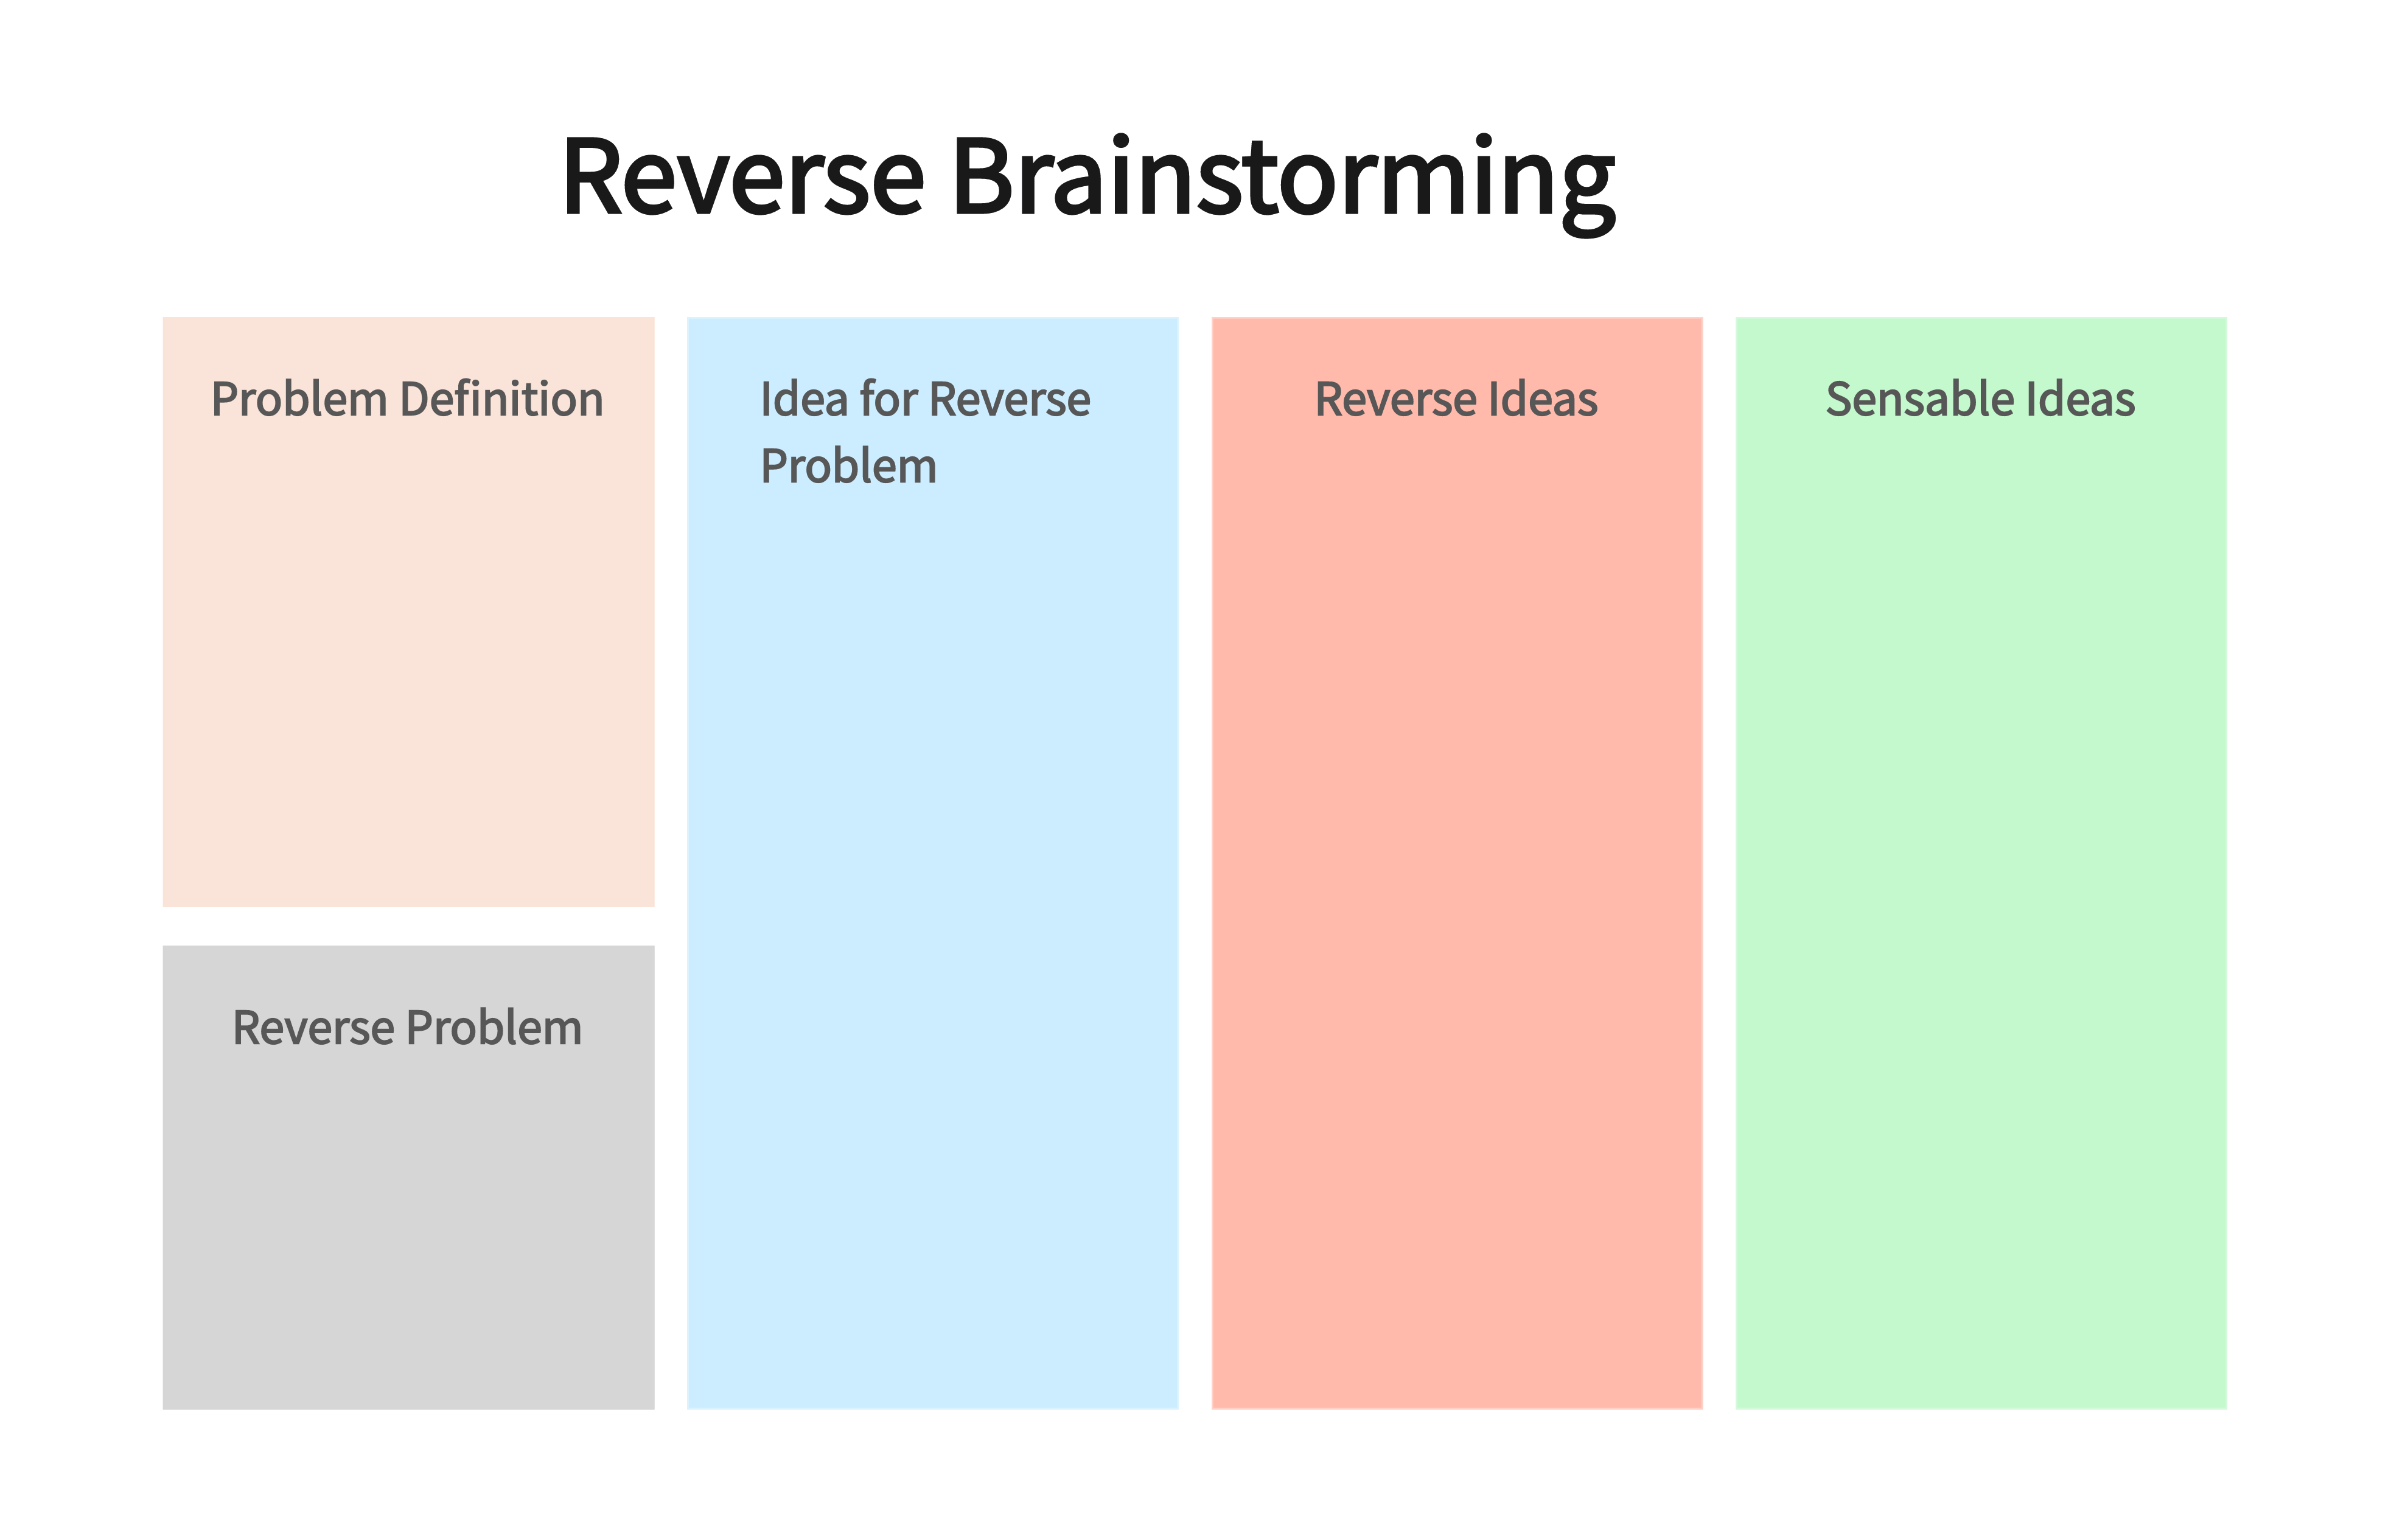 What is Reverse Brainstorming?